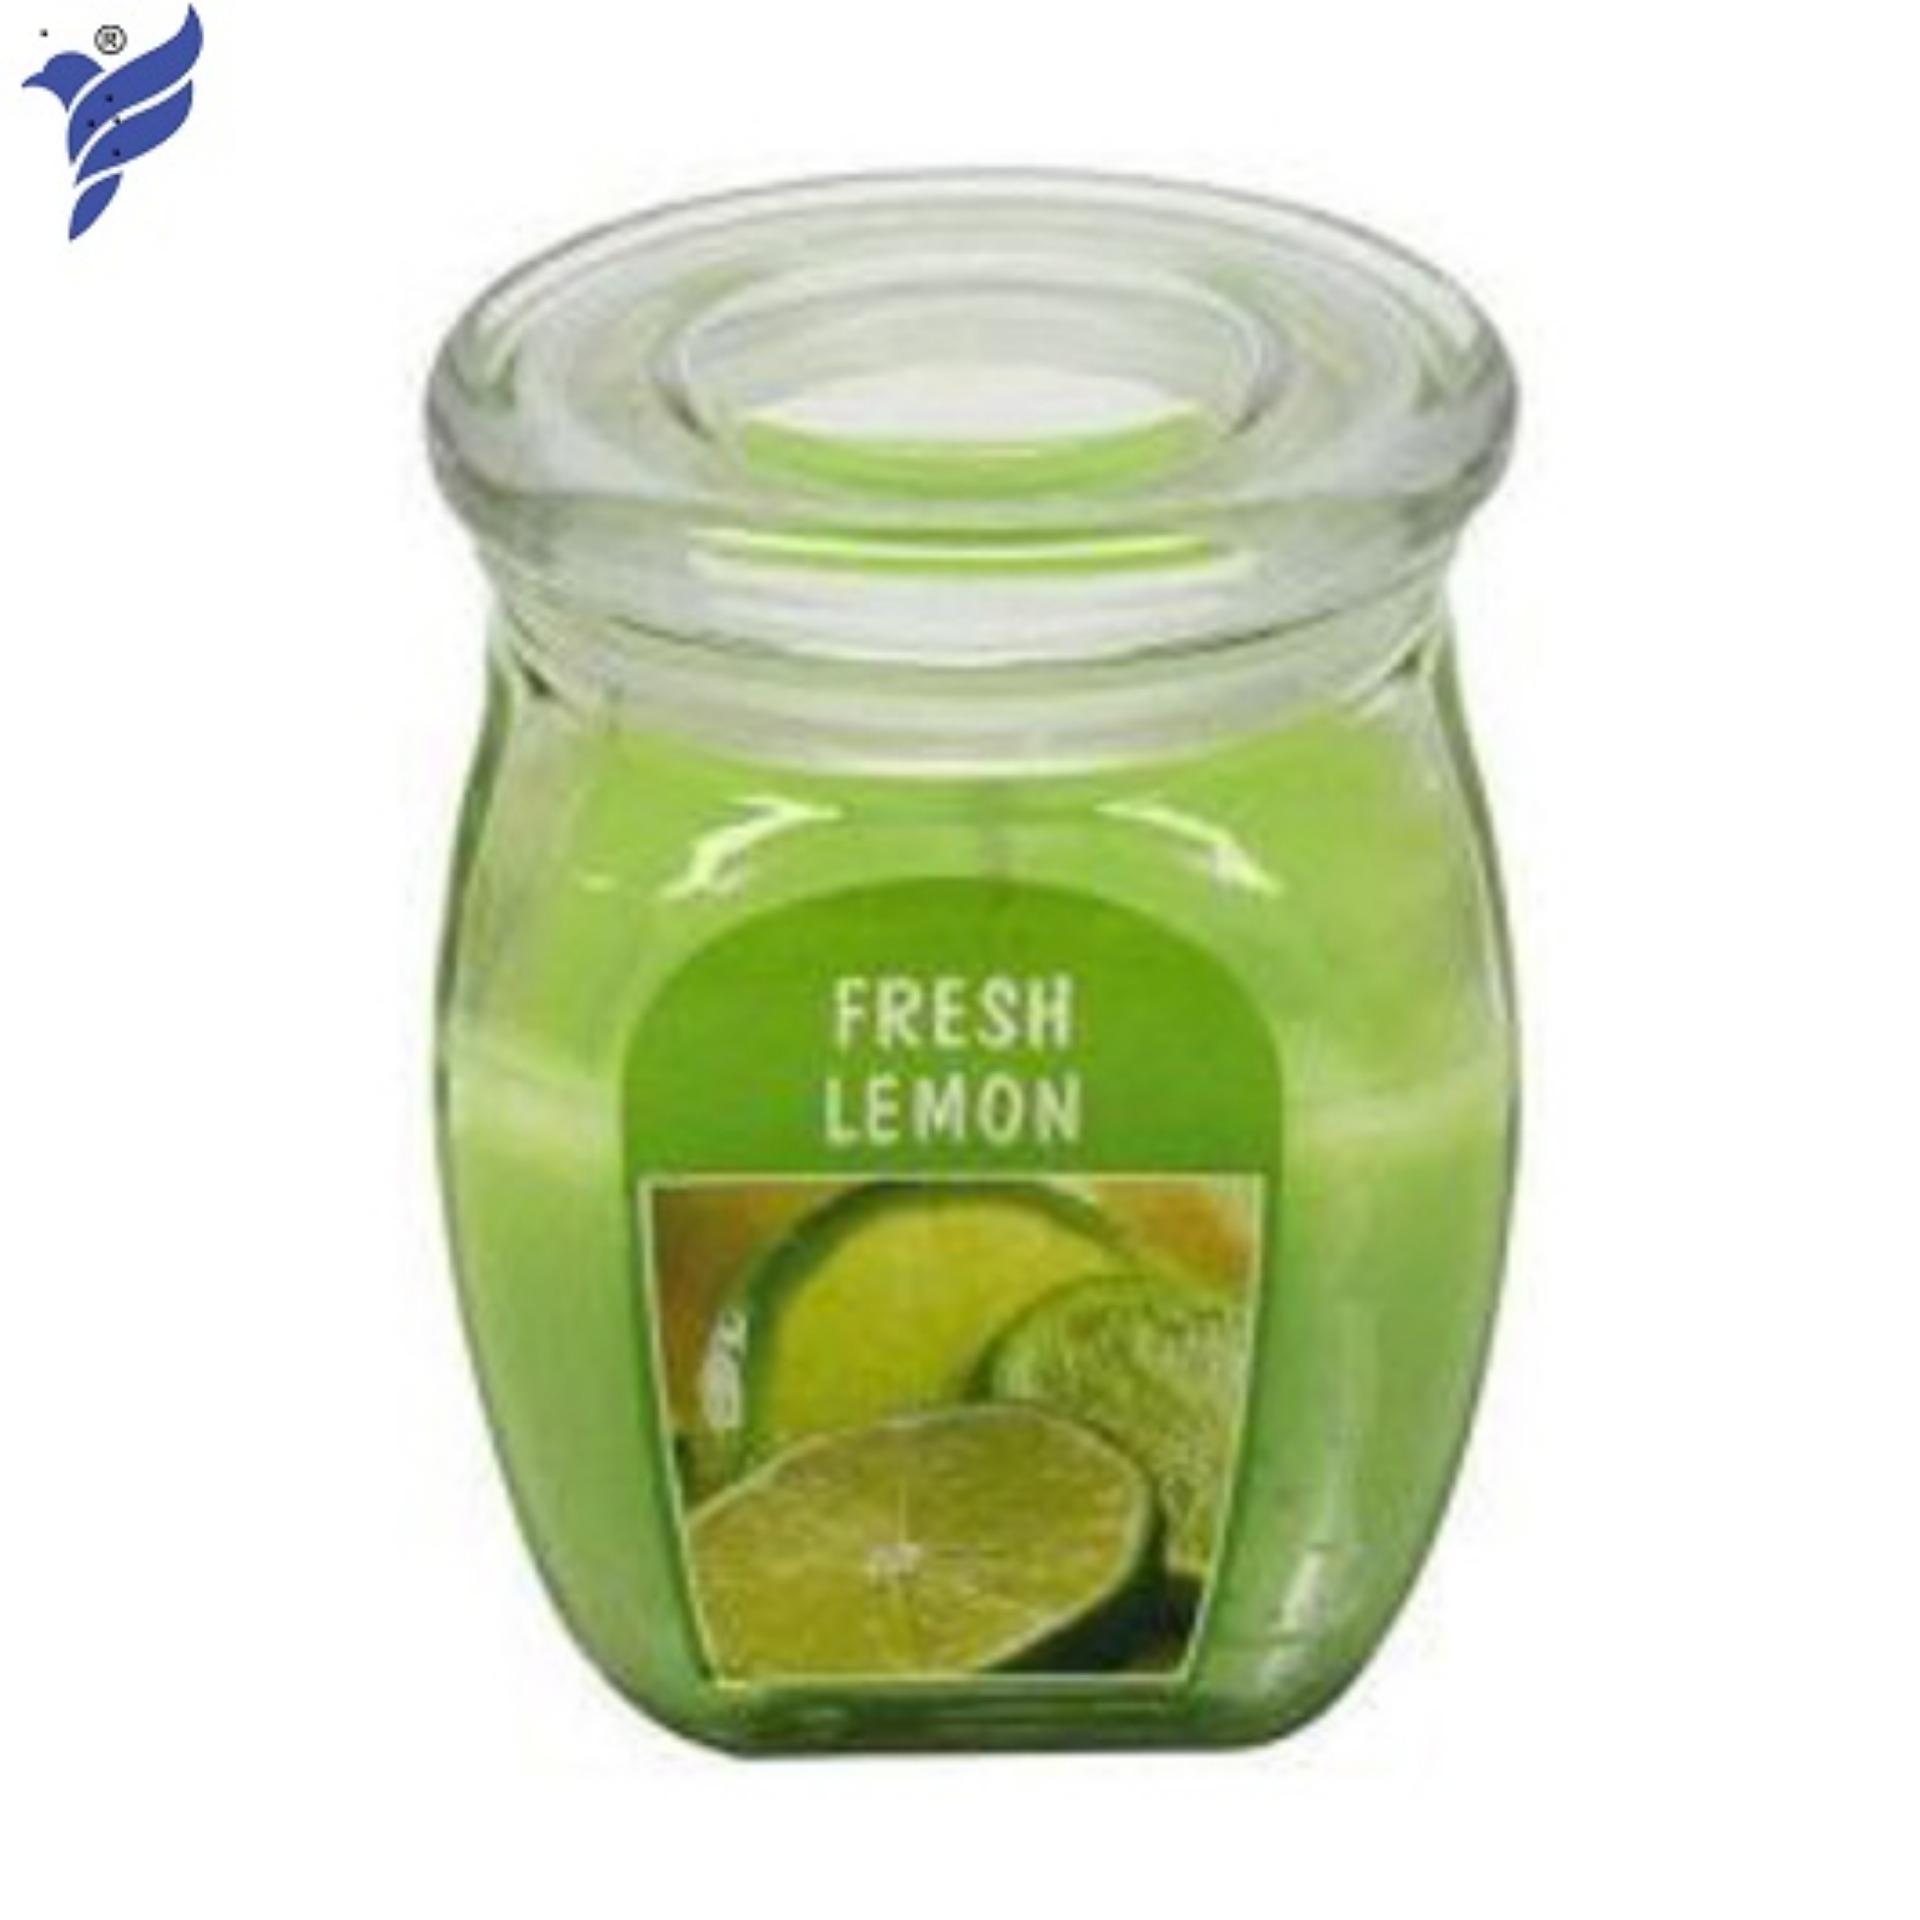 Hũ nến thơm Bolsius Fresh Lemon BOL7919 540g (Hương chanh)